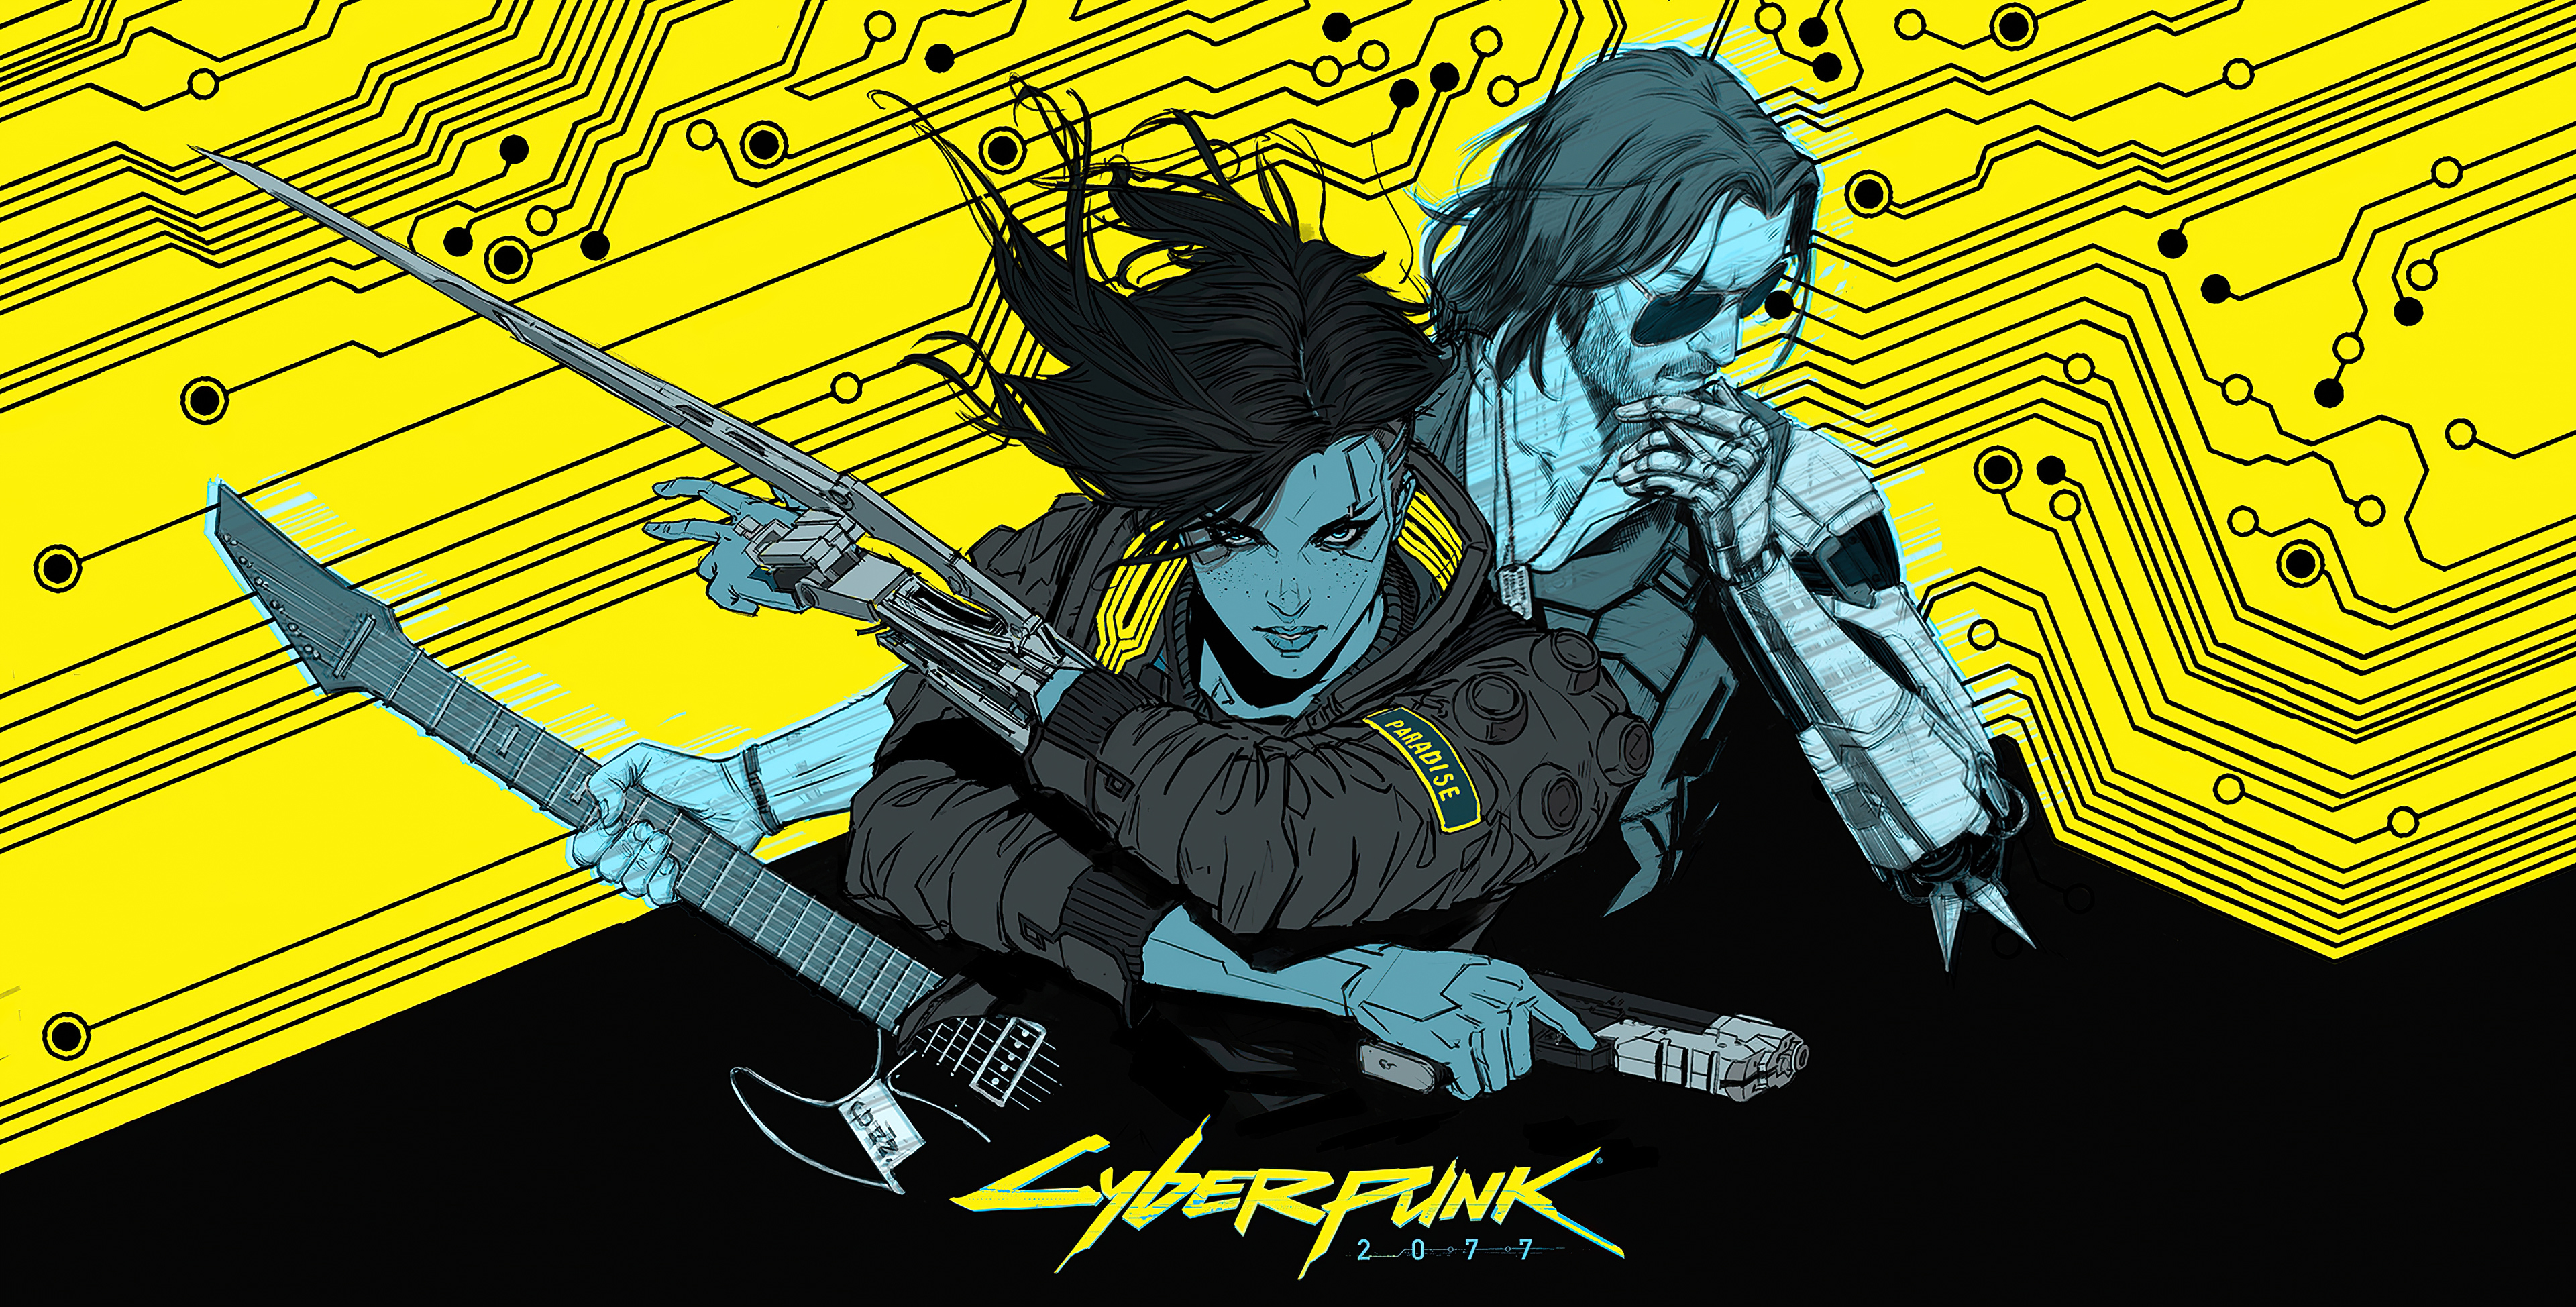 A Cyberpunk Piece 4K wallpaper  Cyberpunk art, Art wallpaper, Desktop wallpaper  art